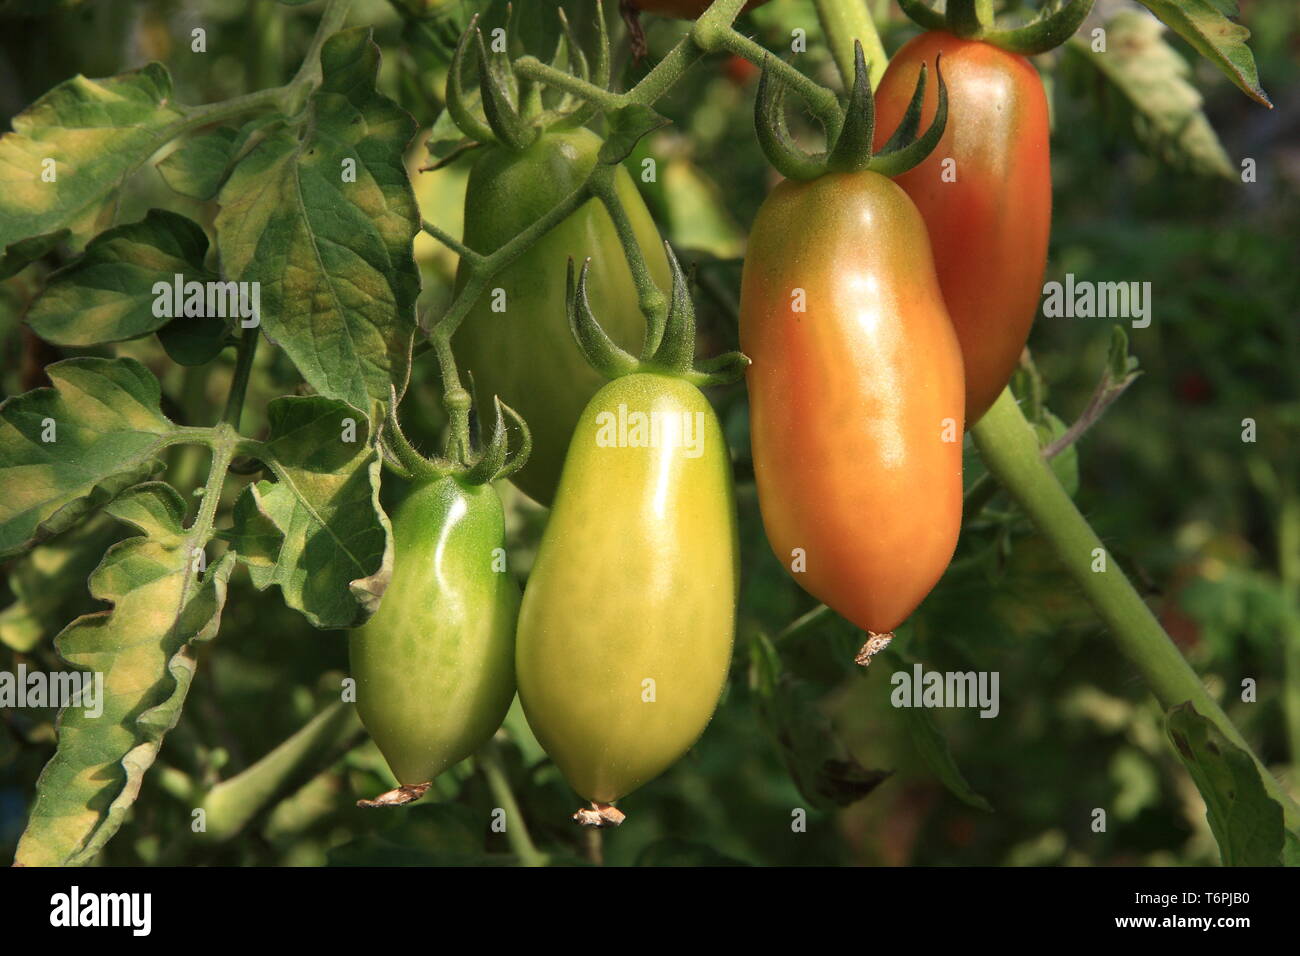 Tomatoes on shrub Stock Photo